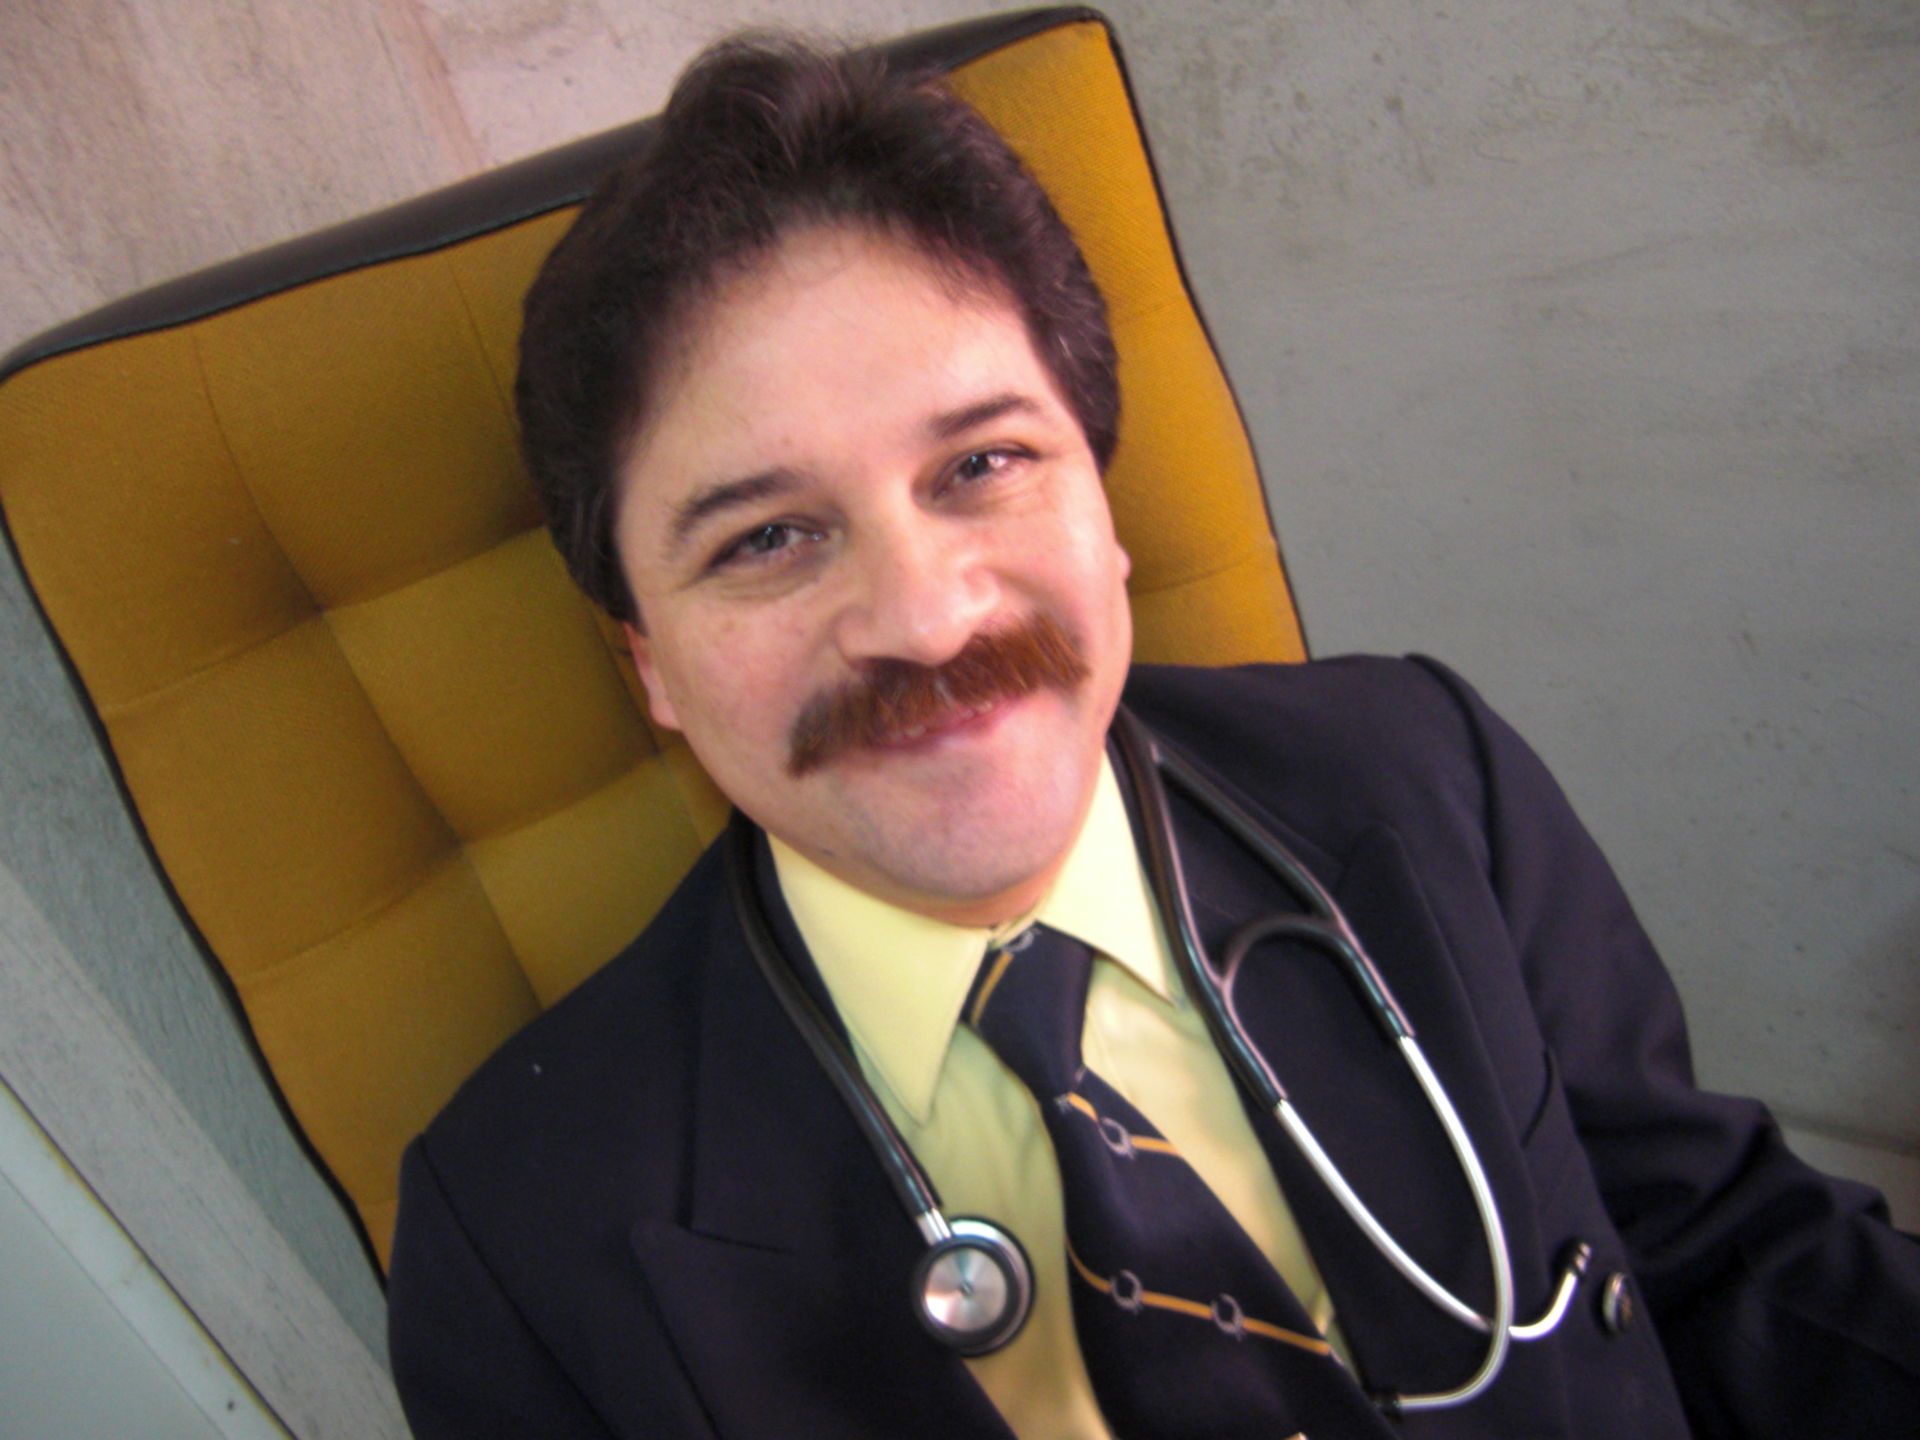 Dr. Lopez